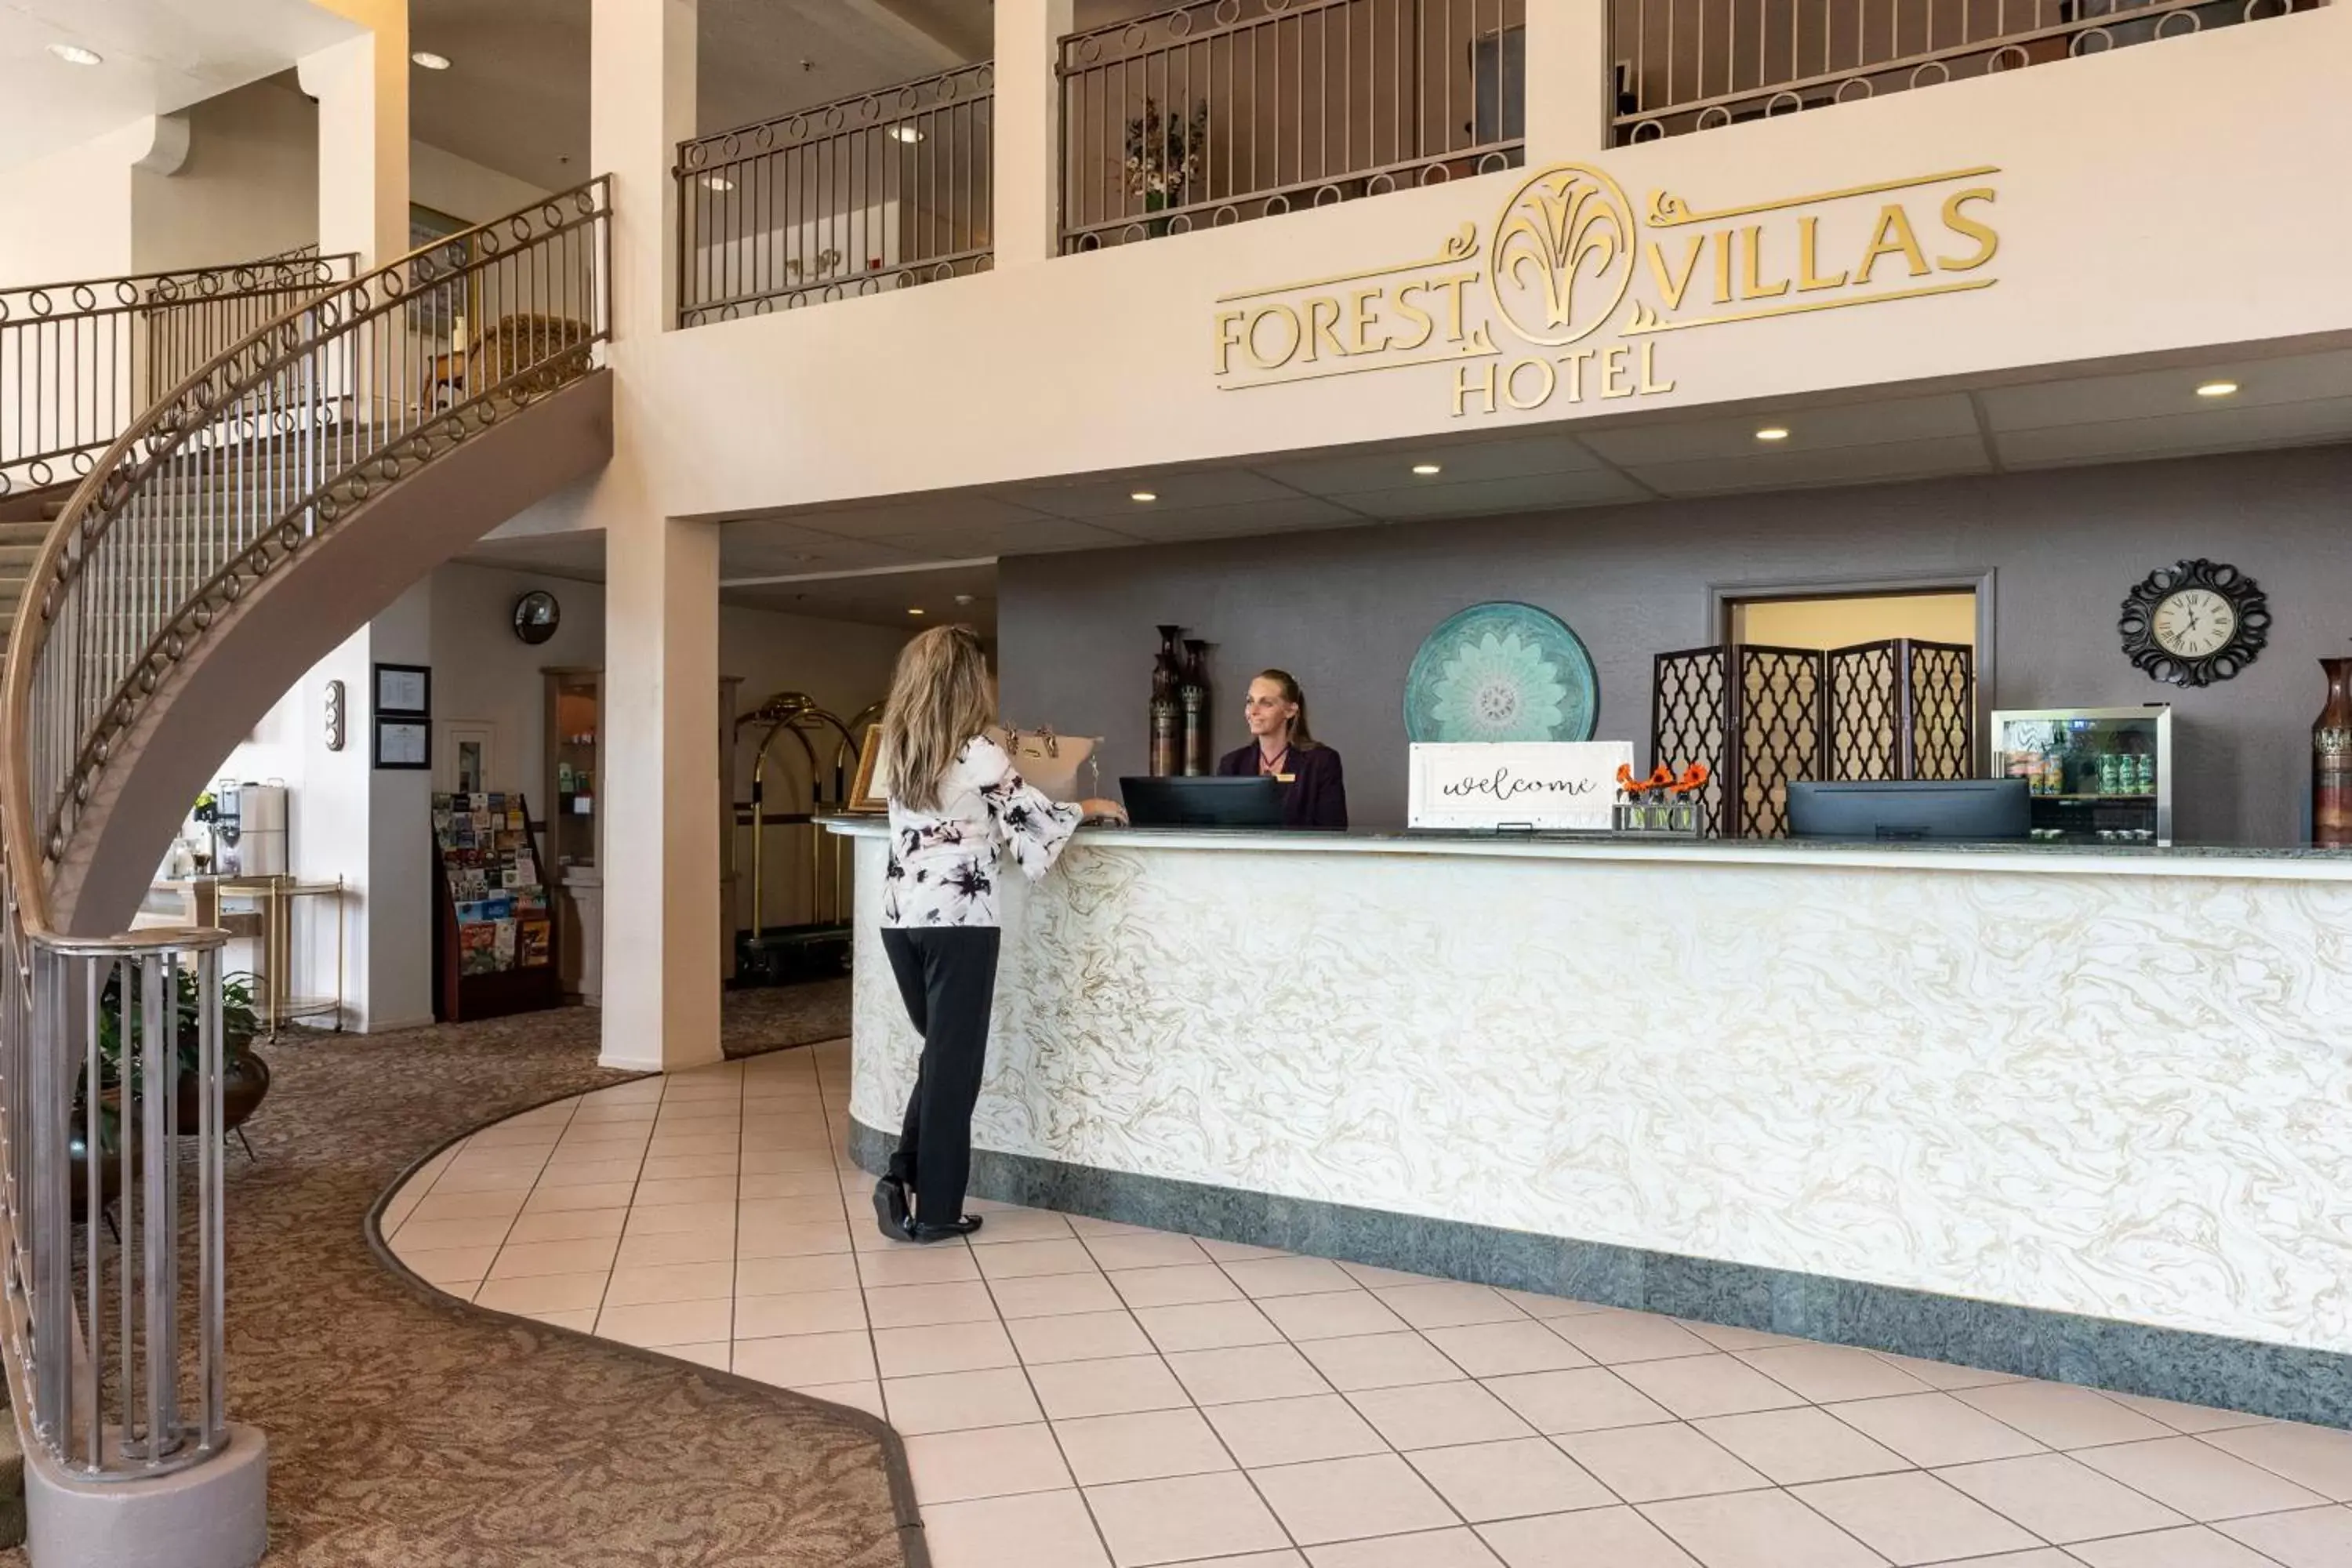 Staff in Forest Villas Hotel